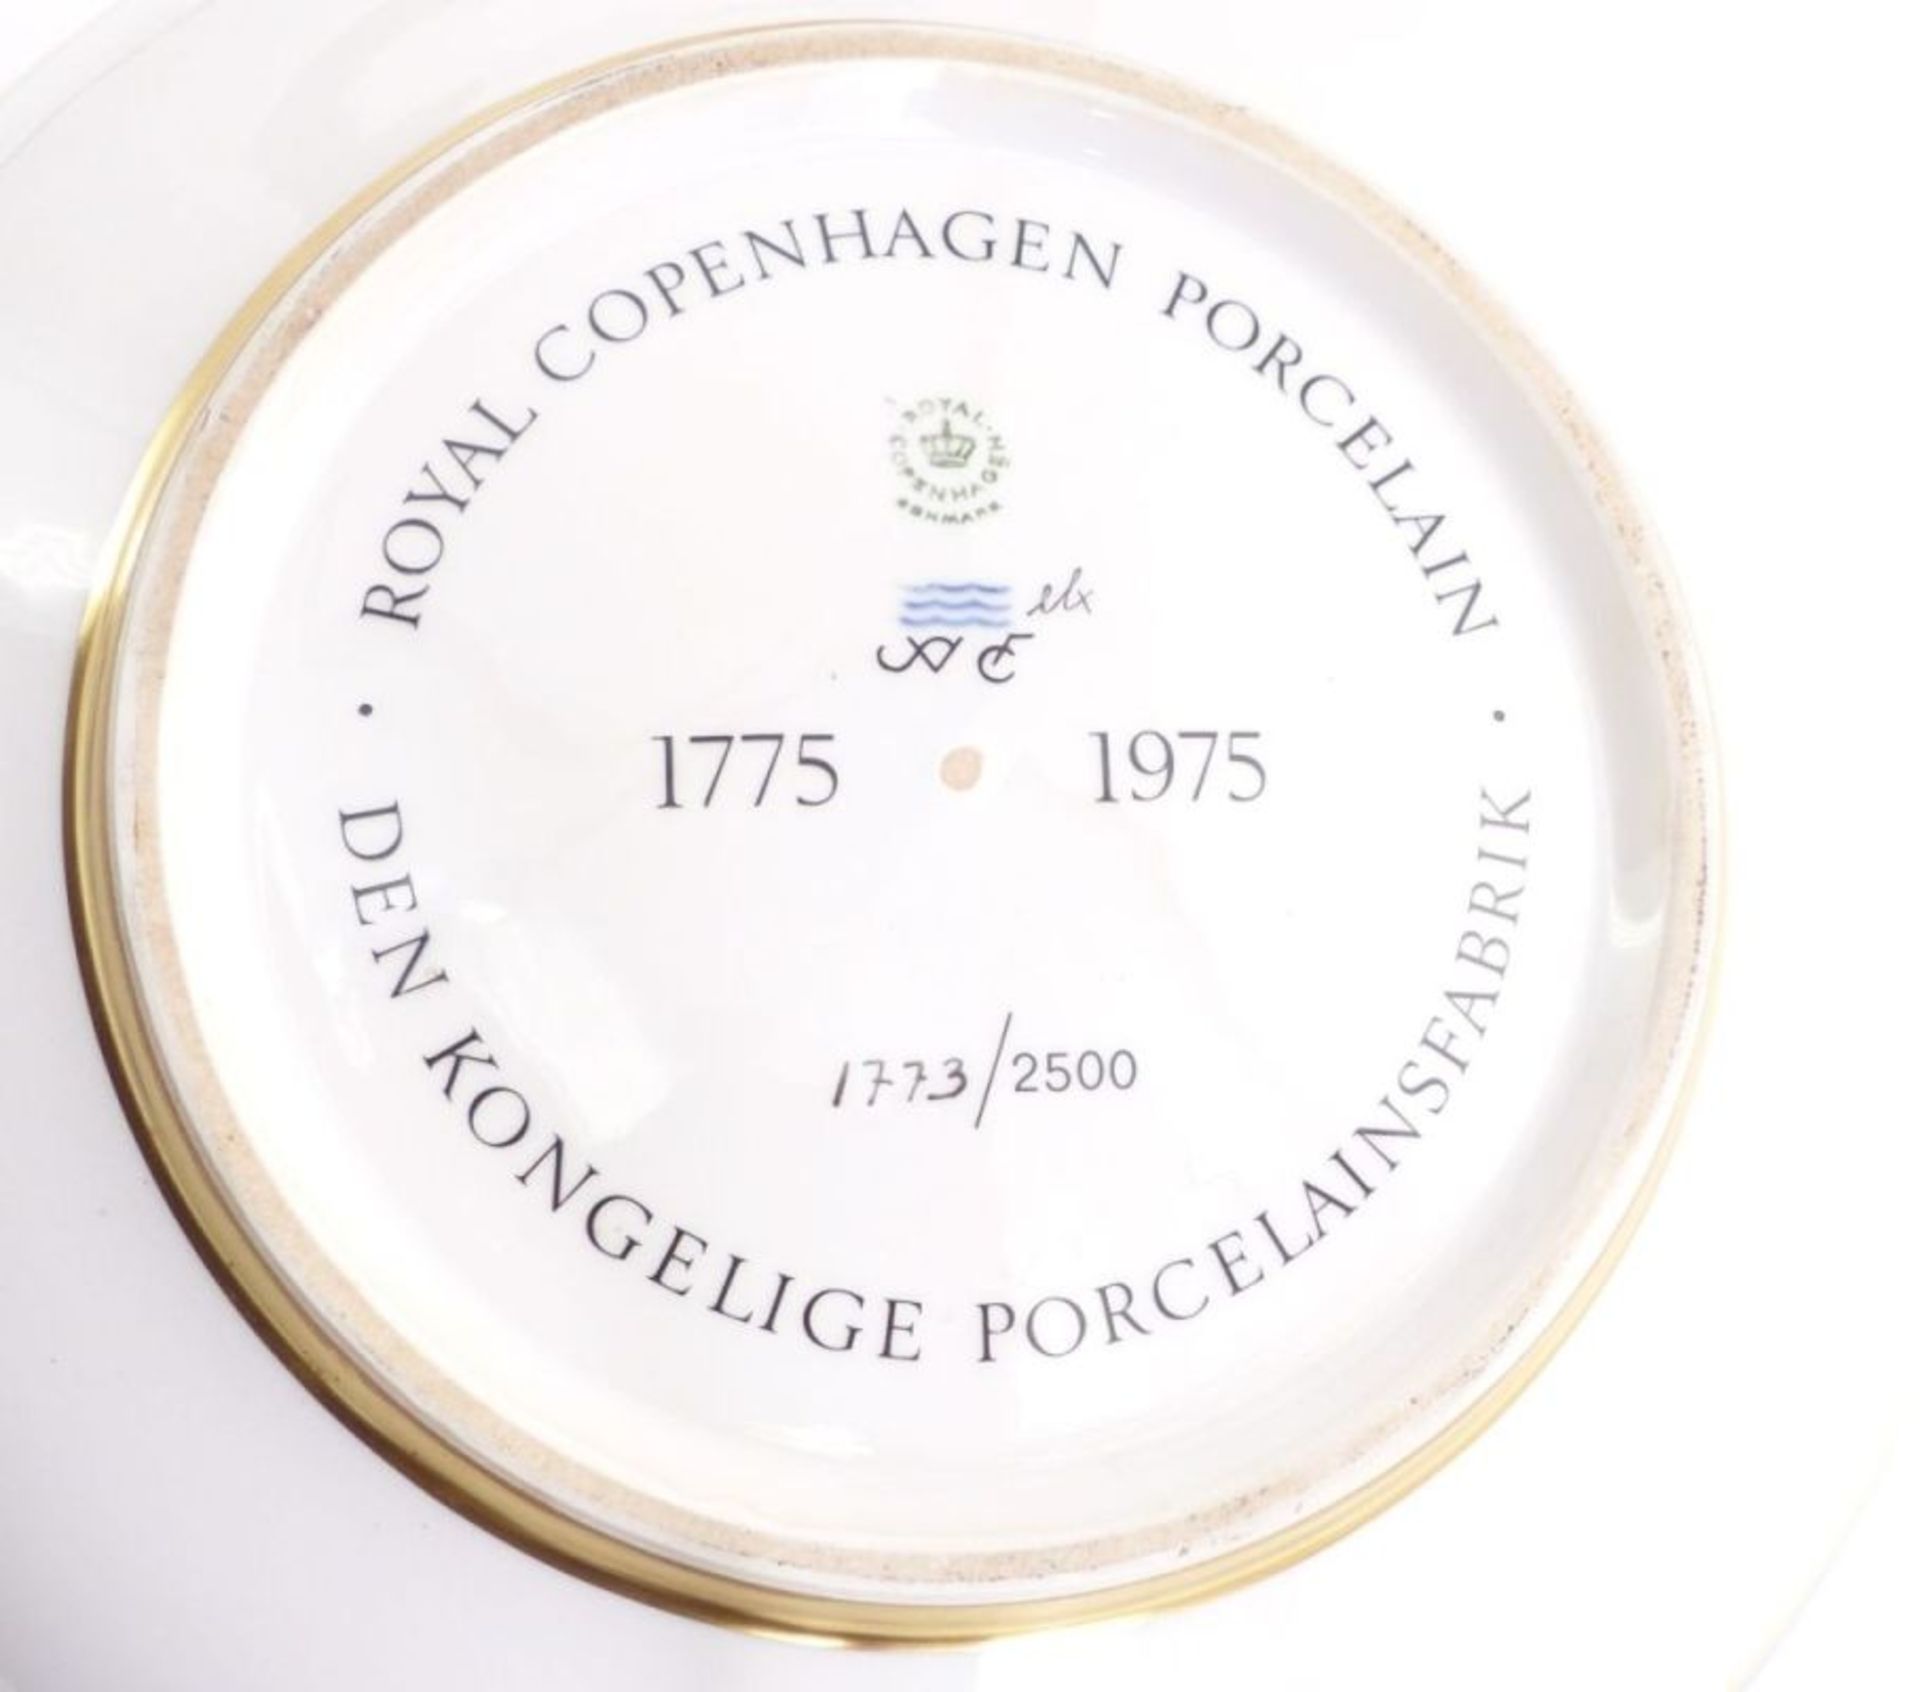 Große Schale zum 200jährigem Jubiläum der Manufaktur 1775-1975, Royal Copenhagen, 1975 - Bild 4 aus 6